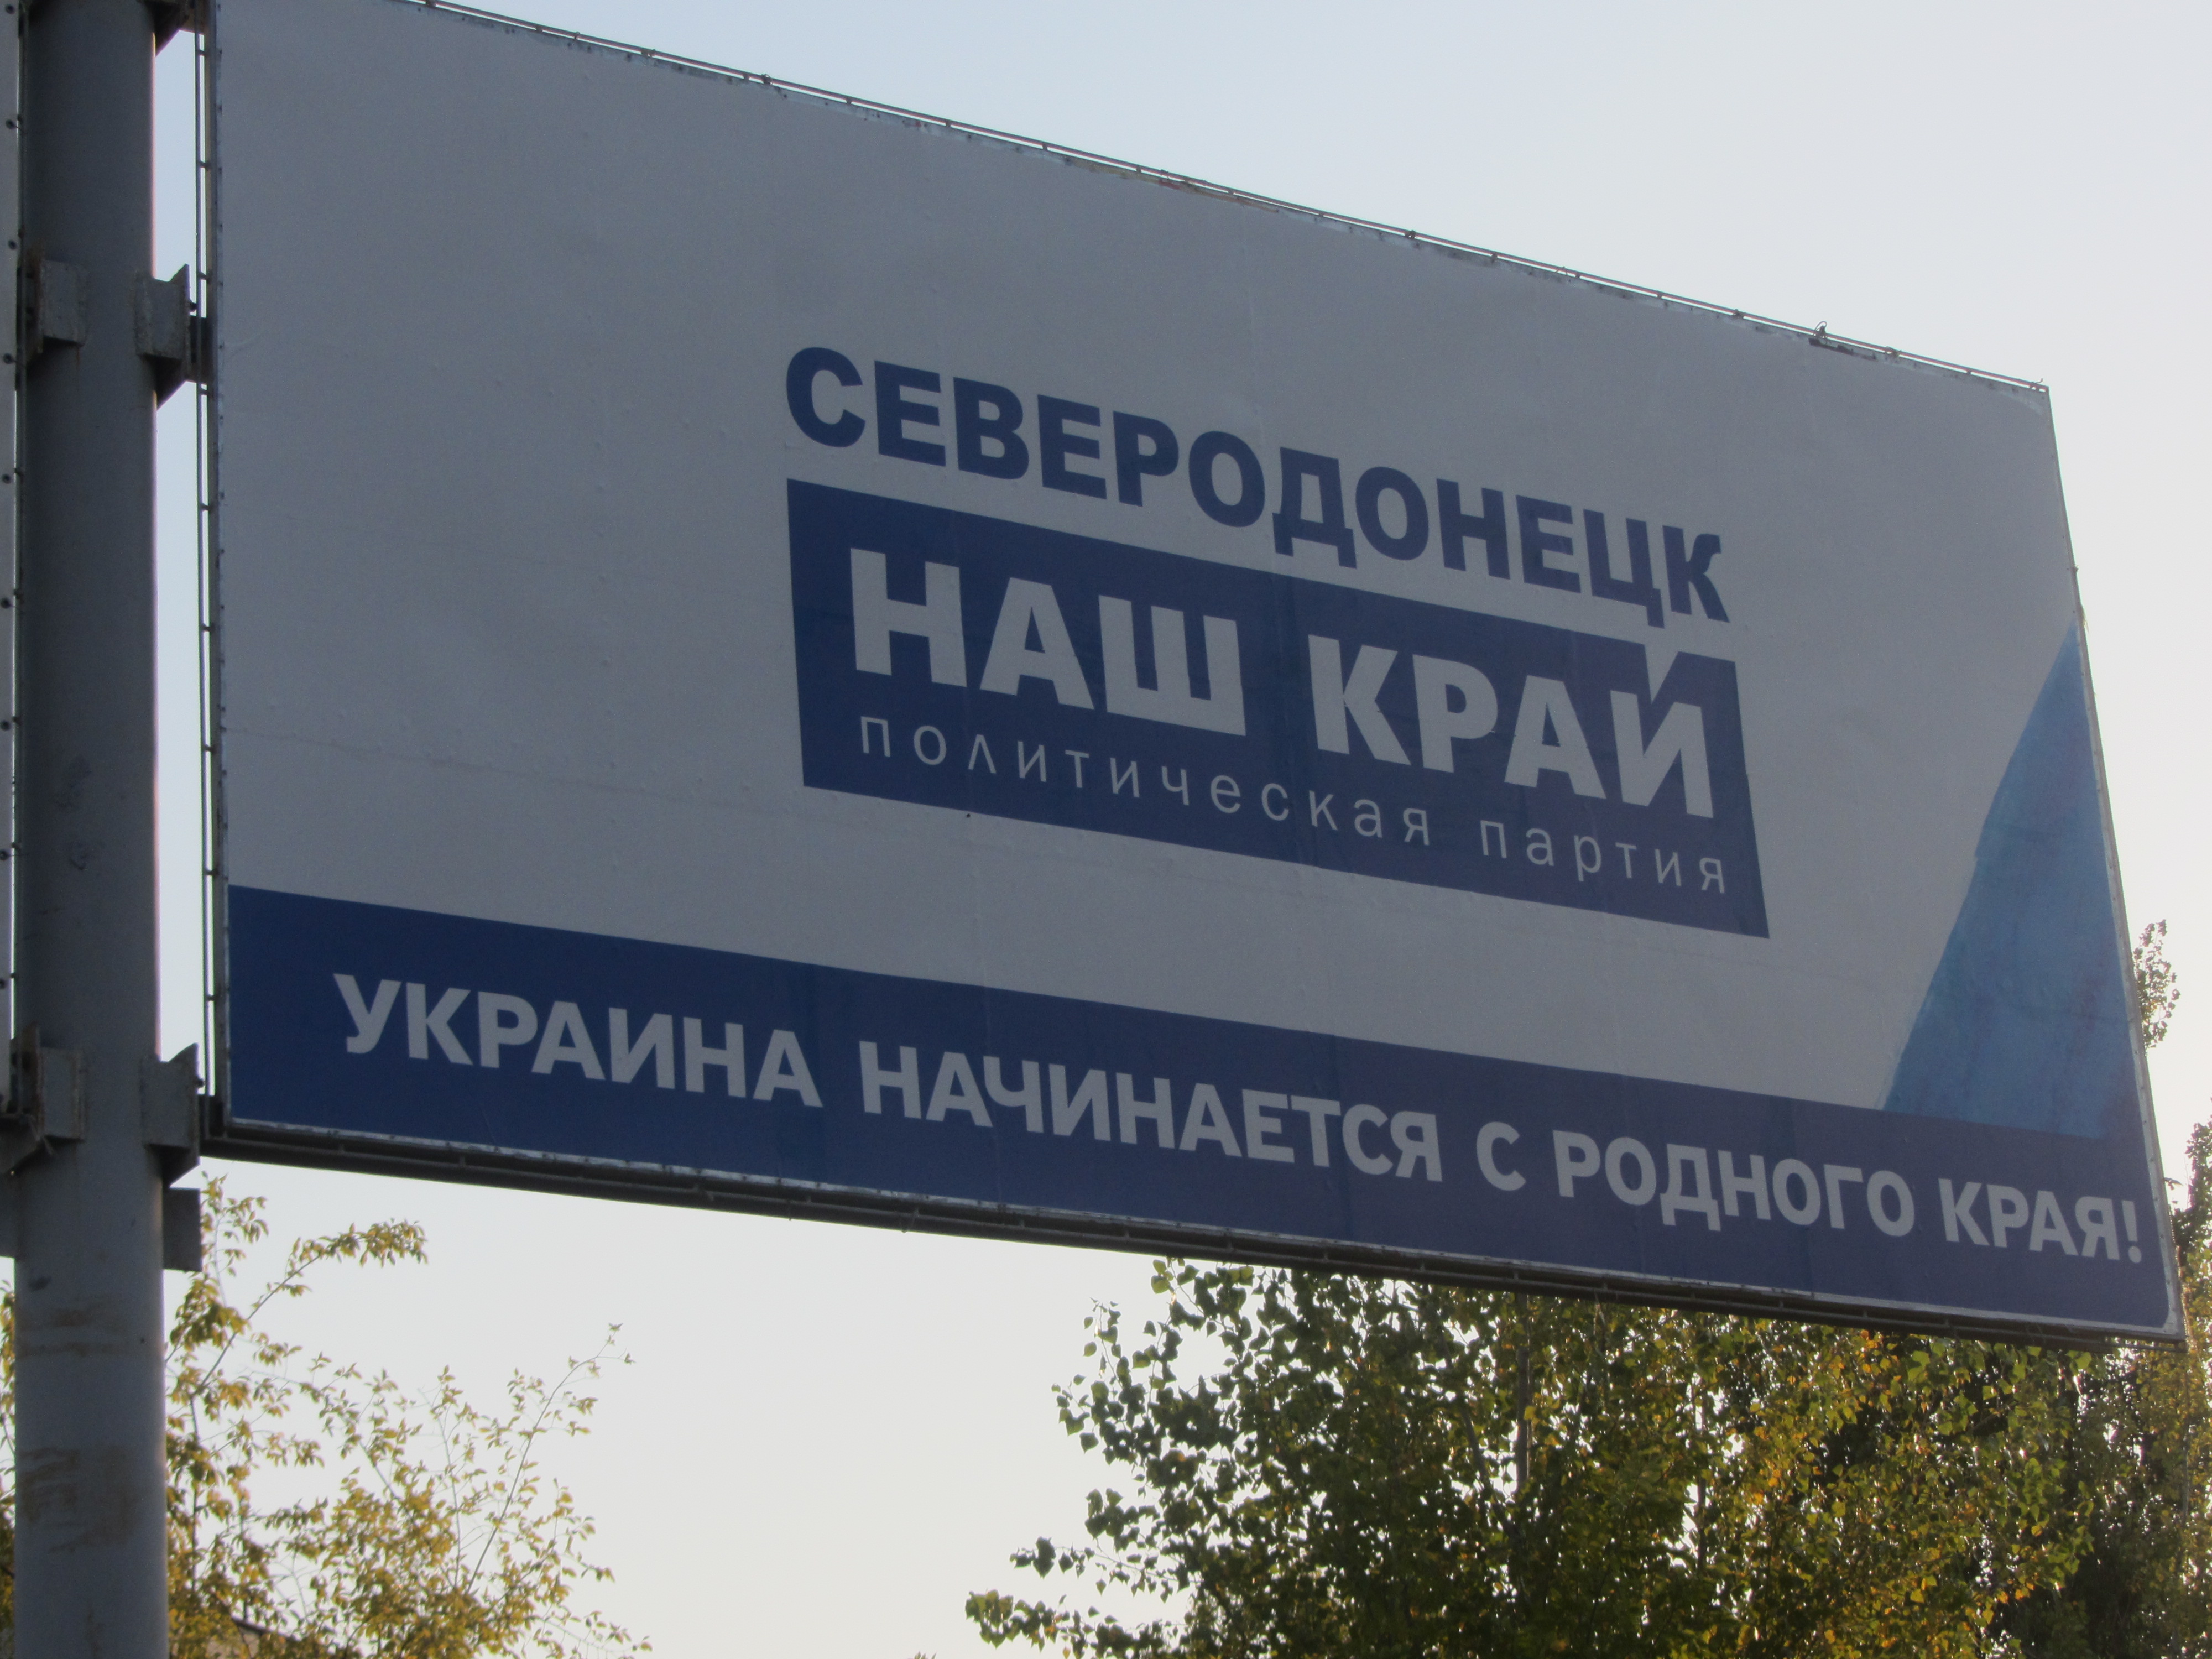 Екс-регіонал від Порошенка підгортає новою партією і Сєвєродонецьк (ФОТО) - фото 1